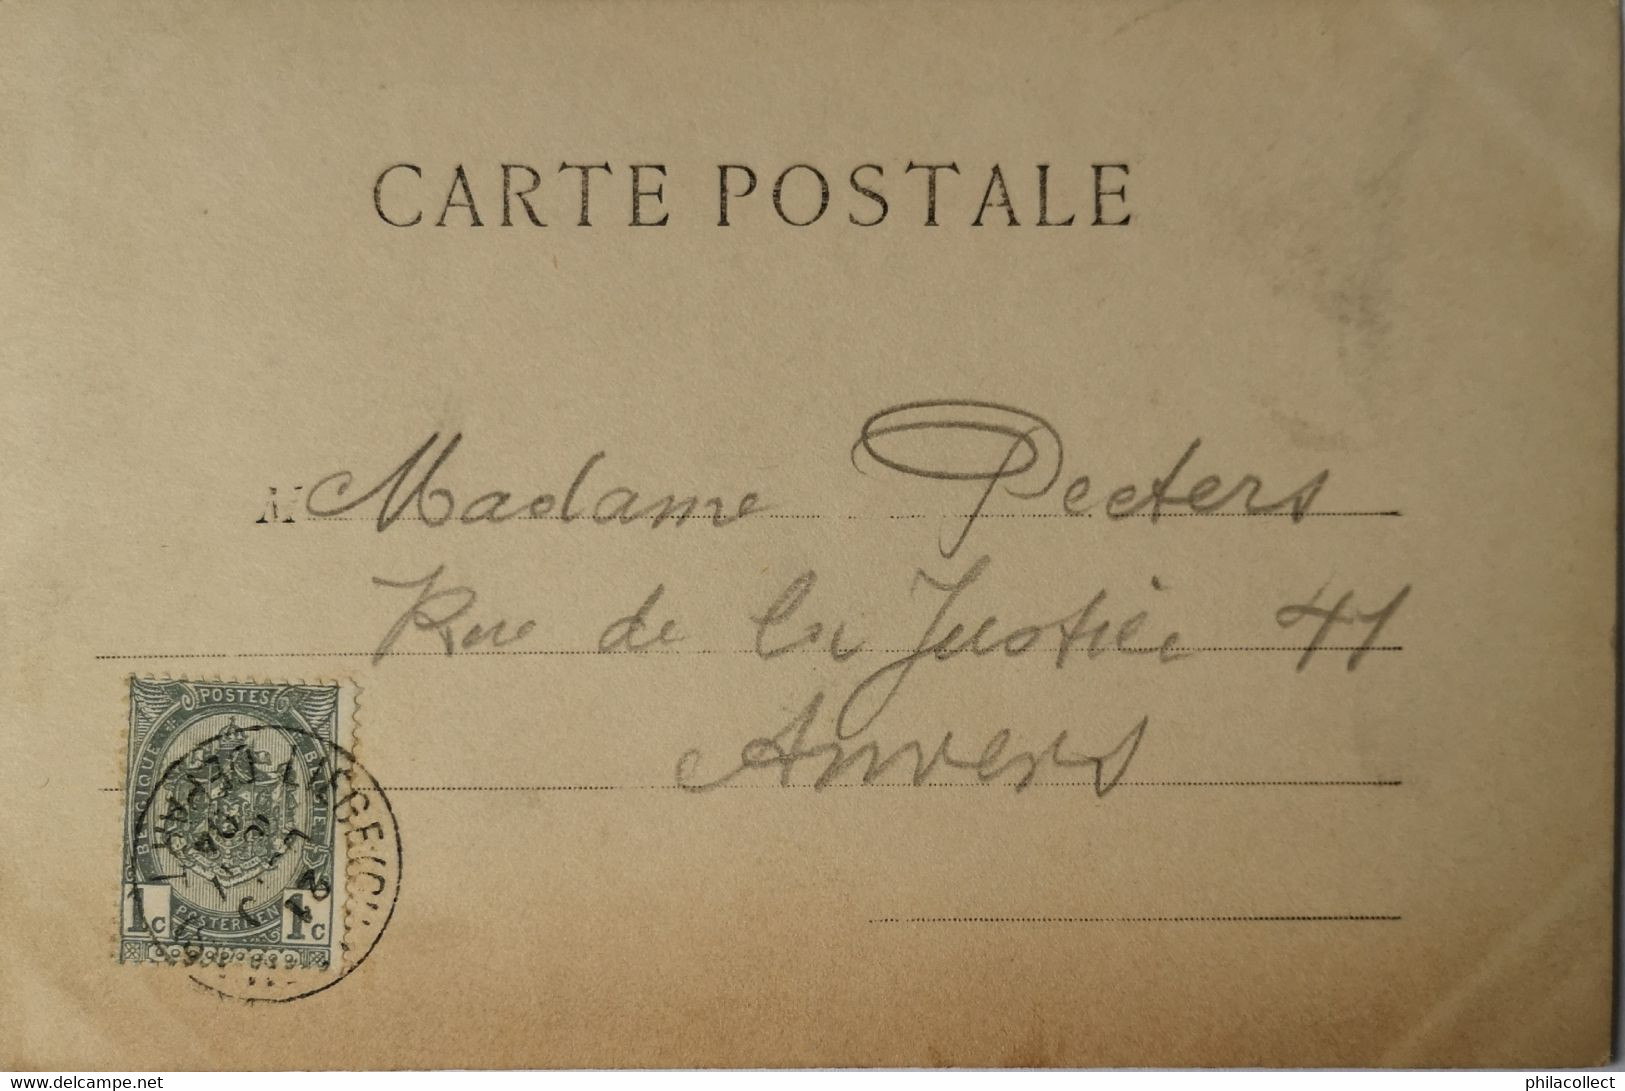 Alice // Prenoms - Name Card Photo J. K. 1904 - Vornamen